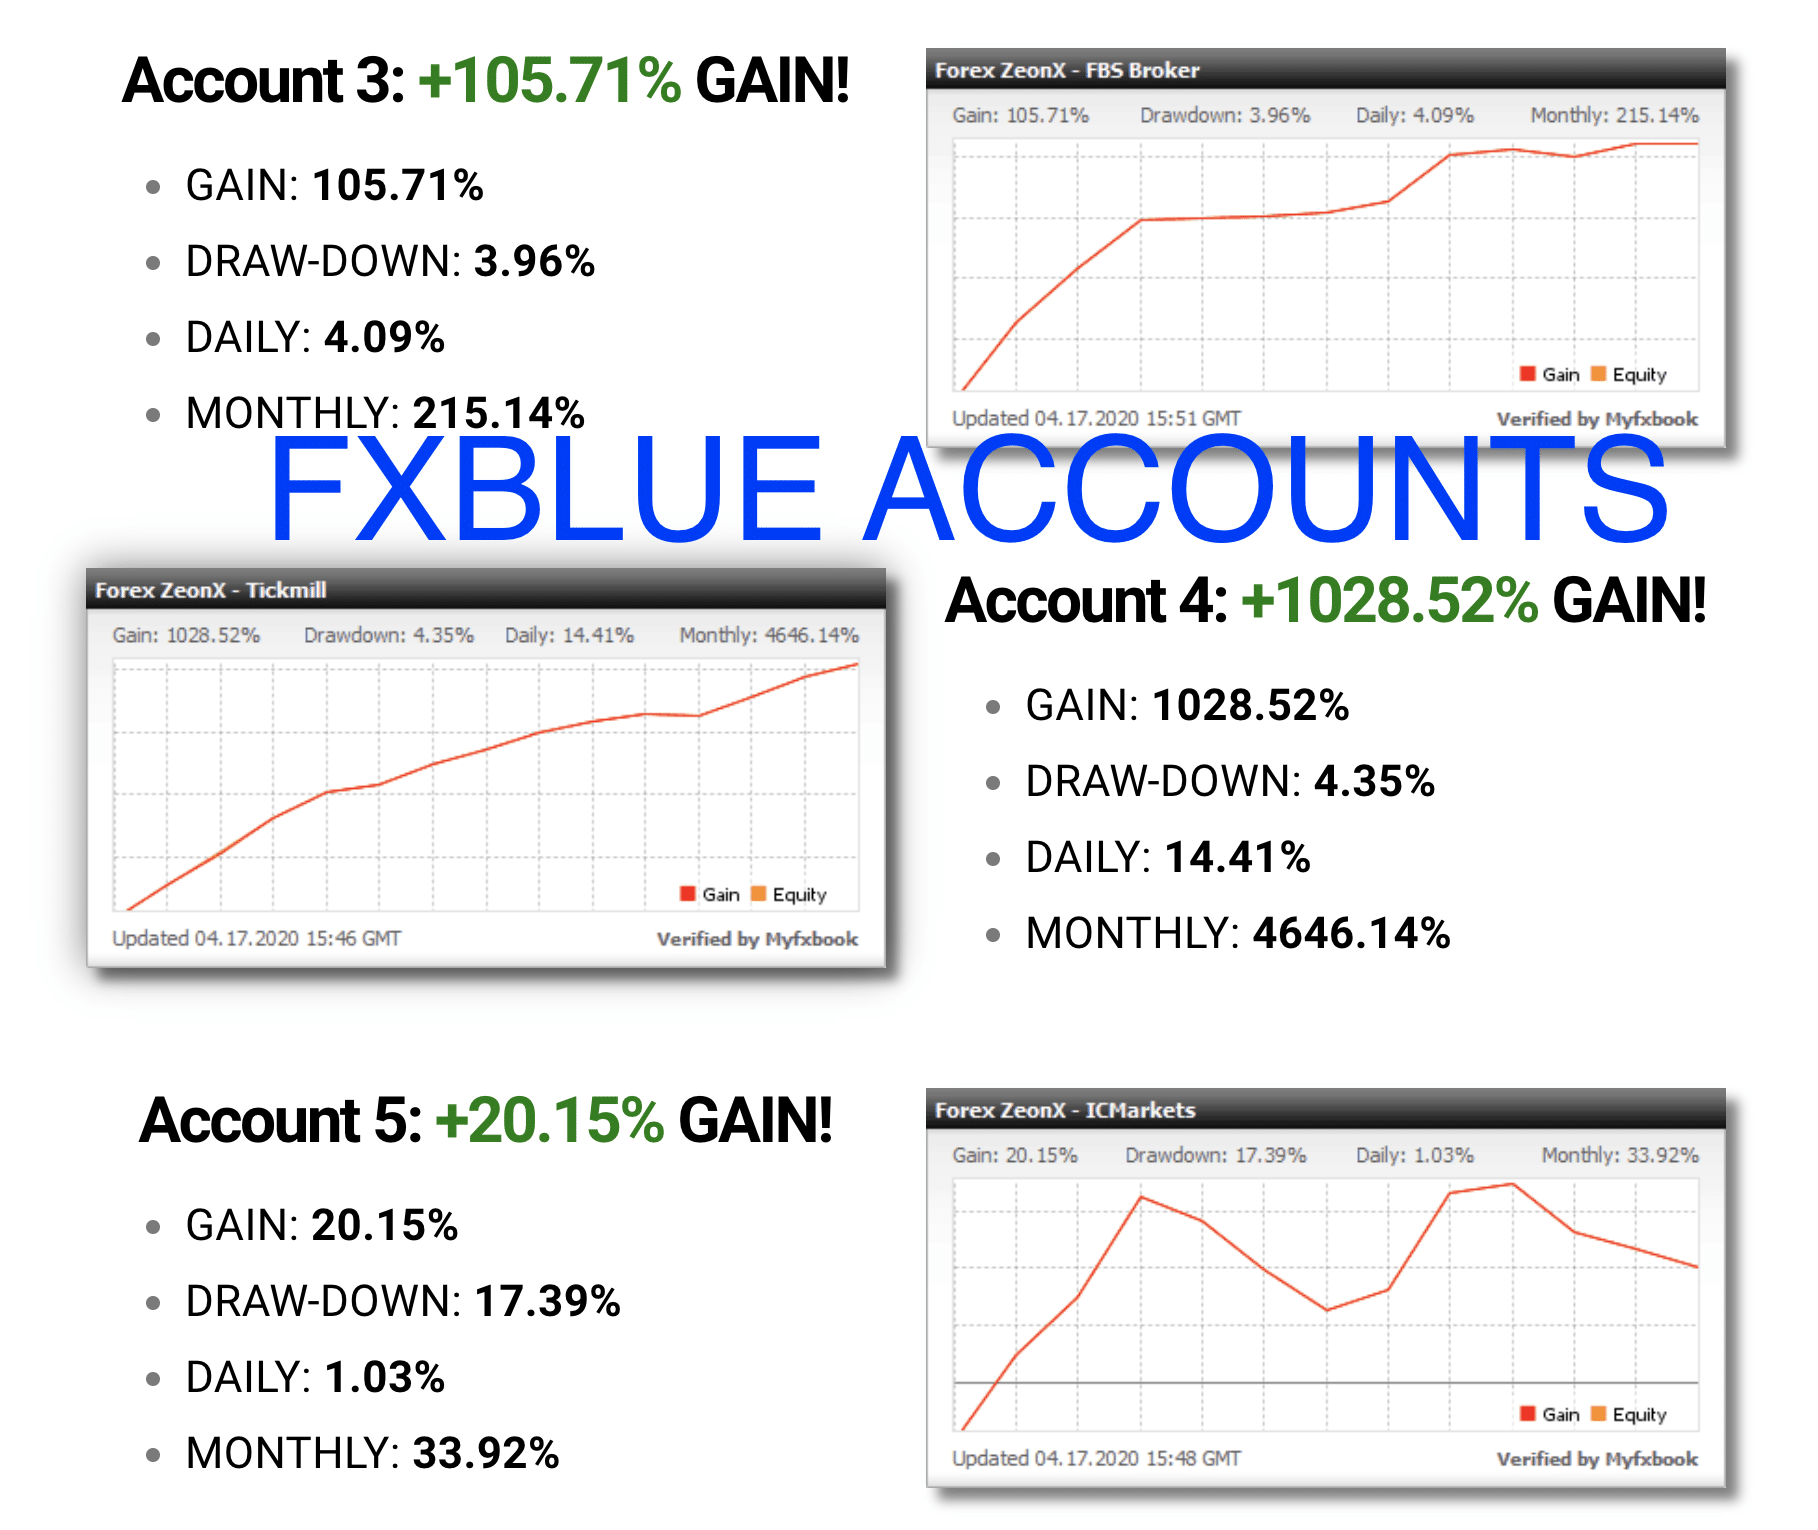 forex zeon x pro fxblue accounts